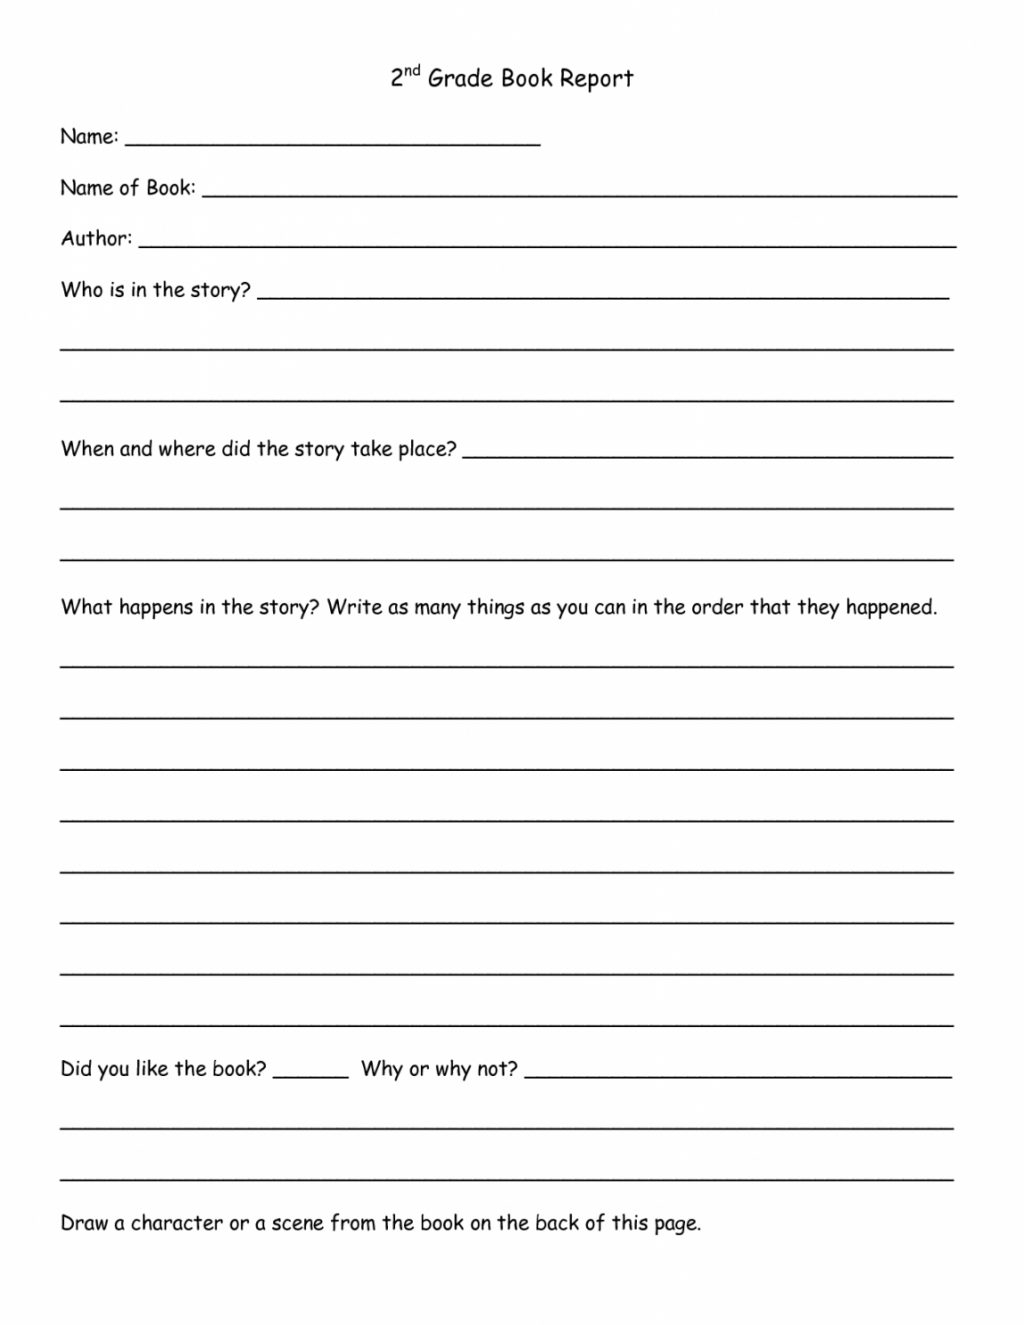 Worksheet Ideas ~ Book Report Template 1St Grade Kola Regarding 1St Grade Book Report Template